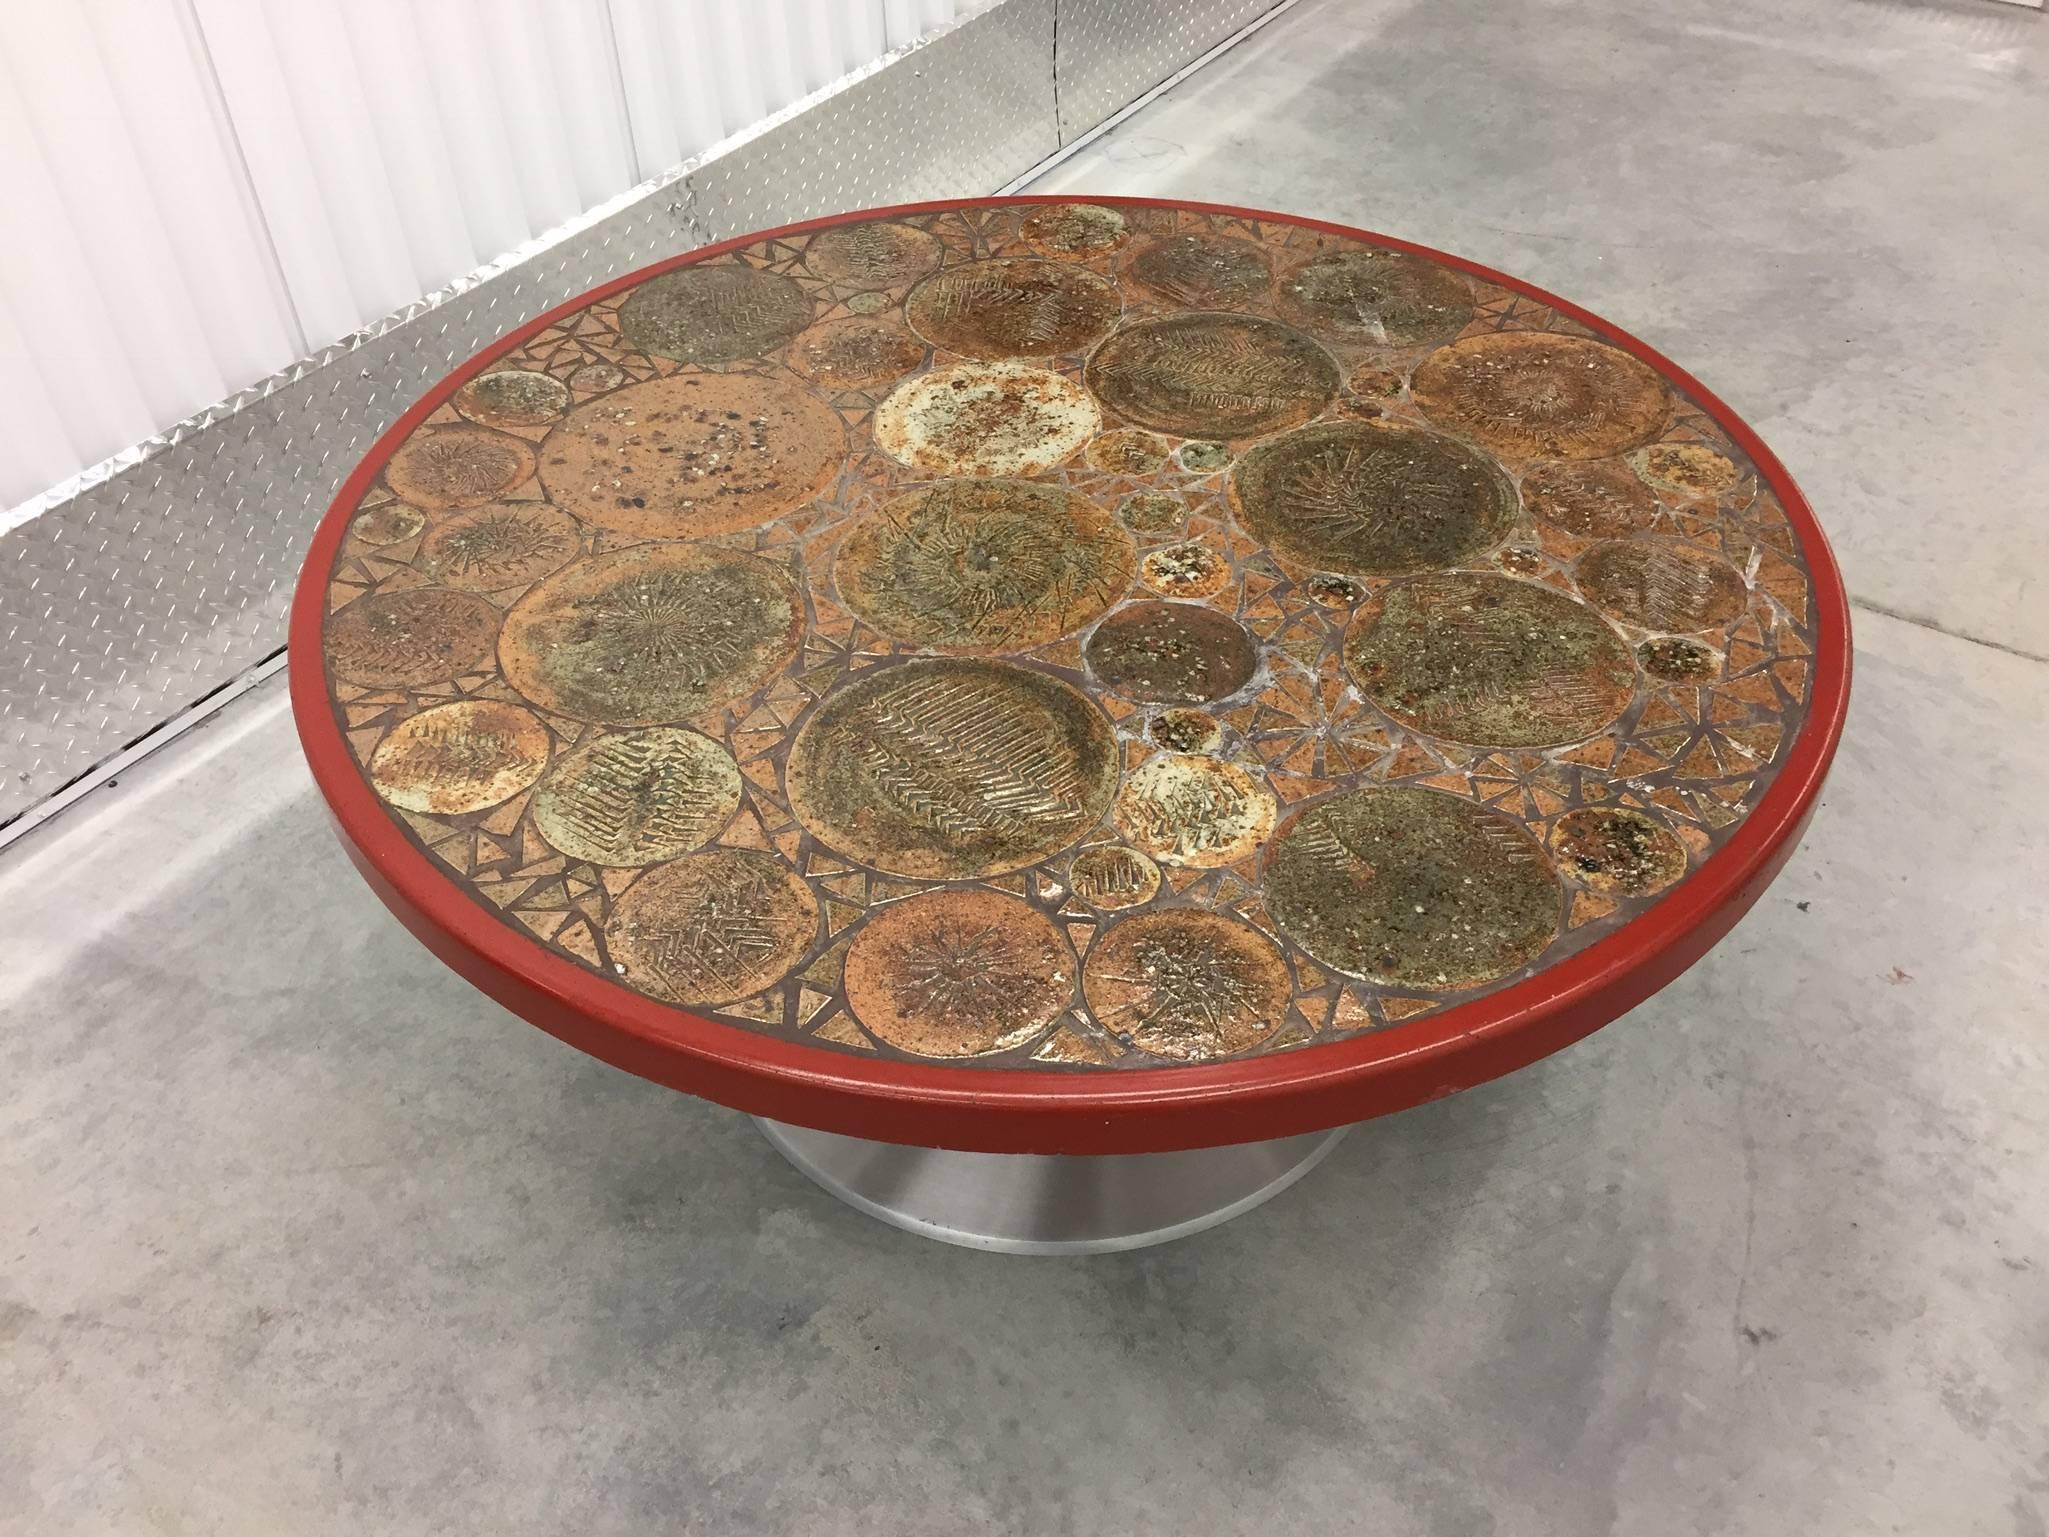 Scandinavian Modern Tue Poulsen Circular Coffee Table with Art Tile Inlay, Denmark, circa 1960s For Sale